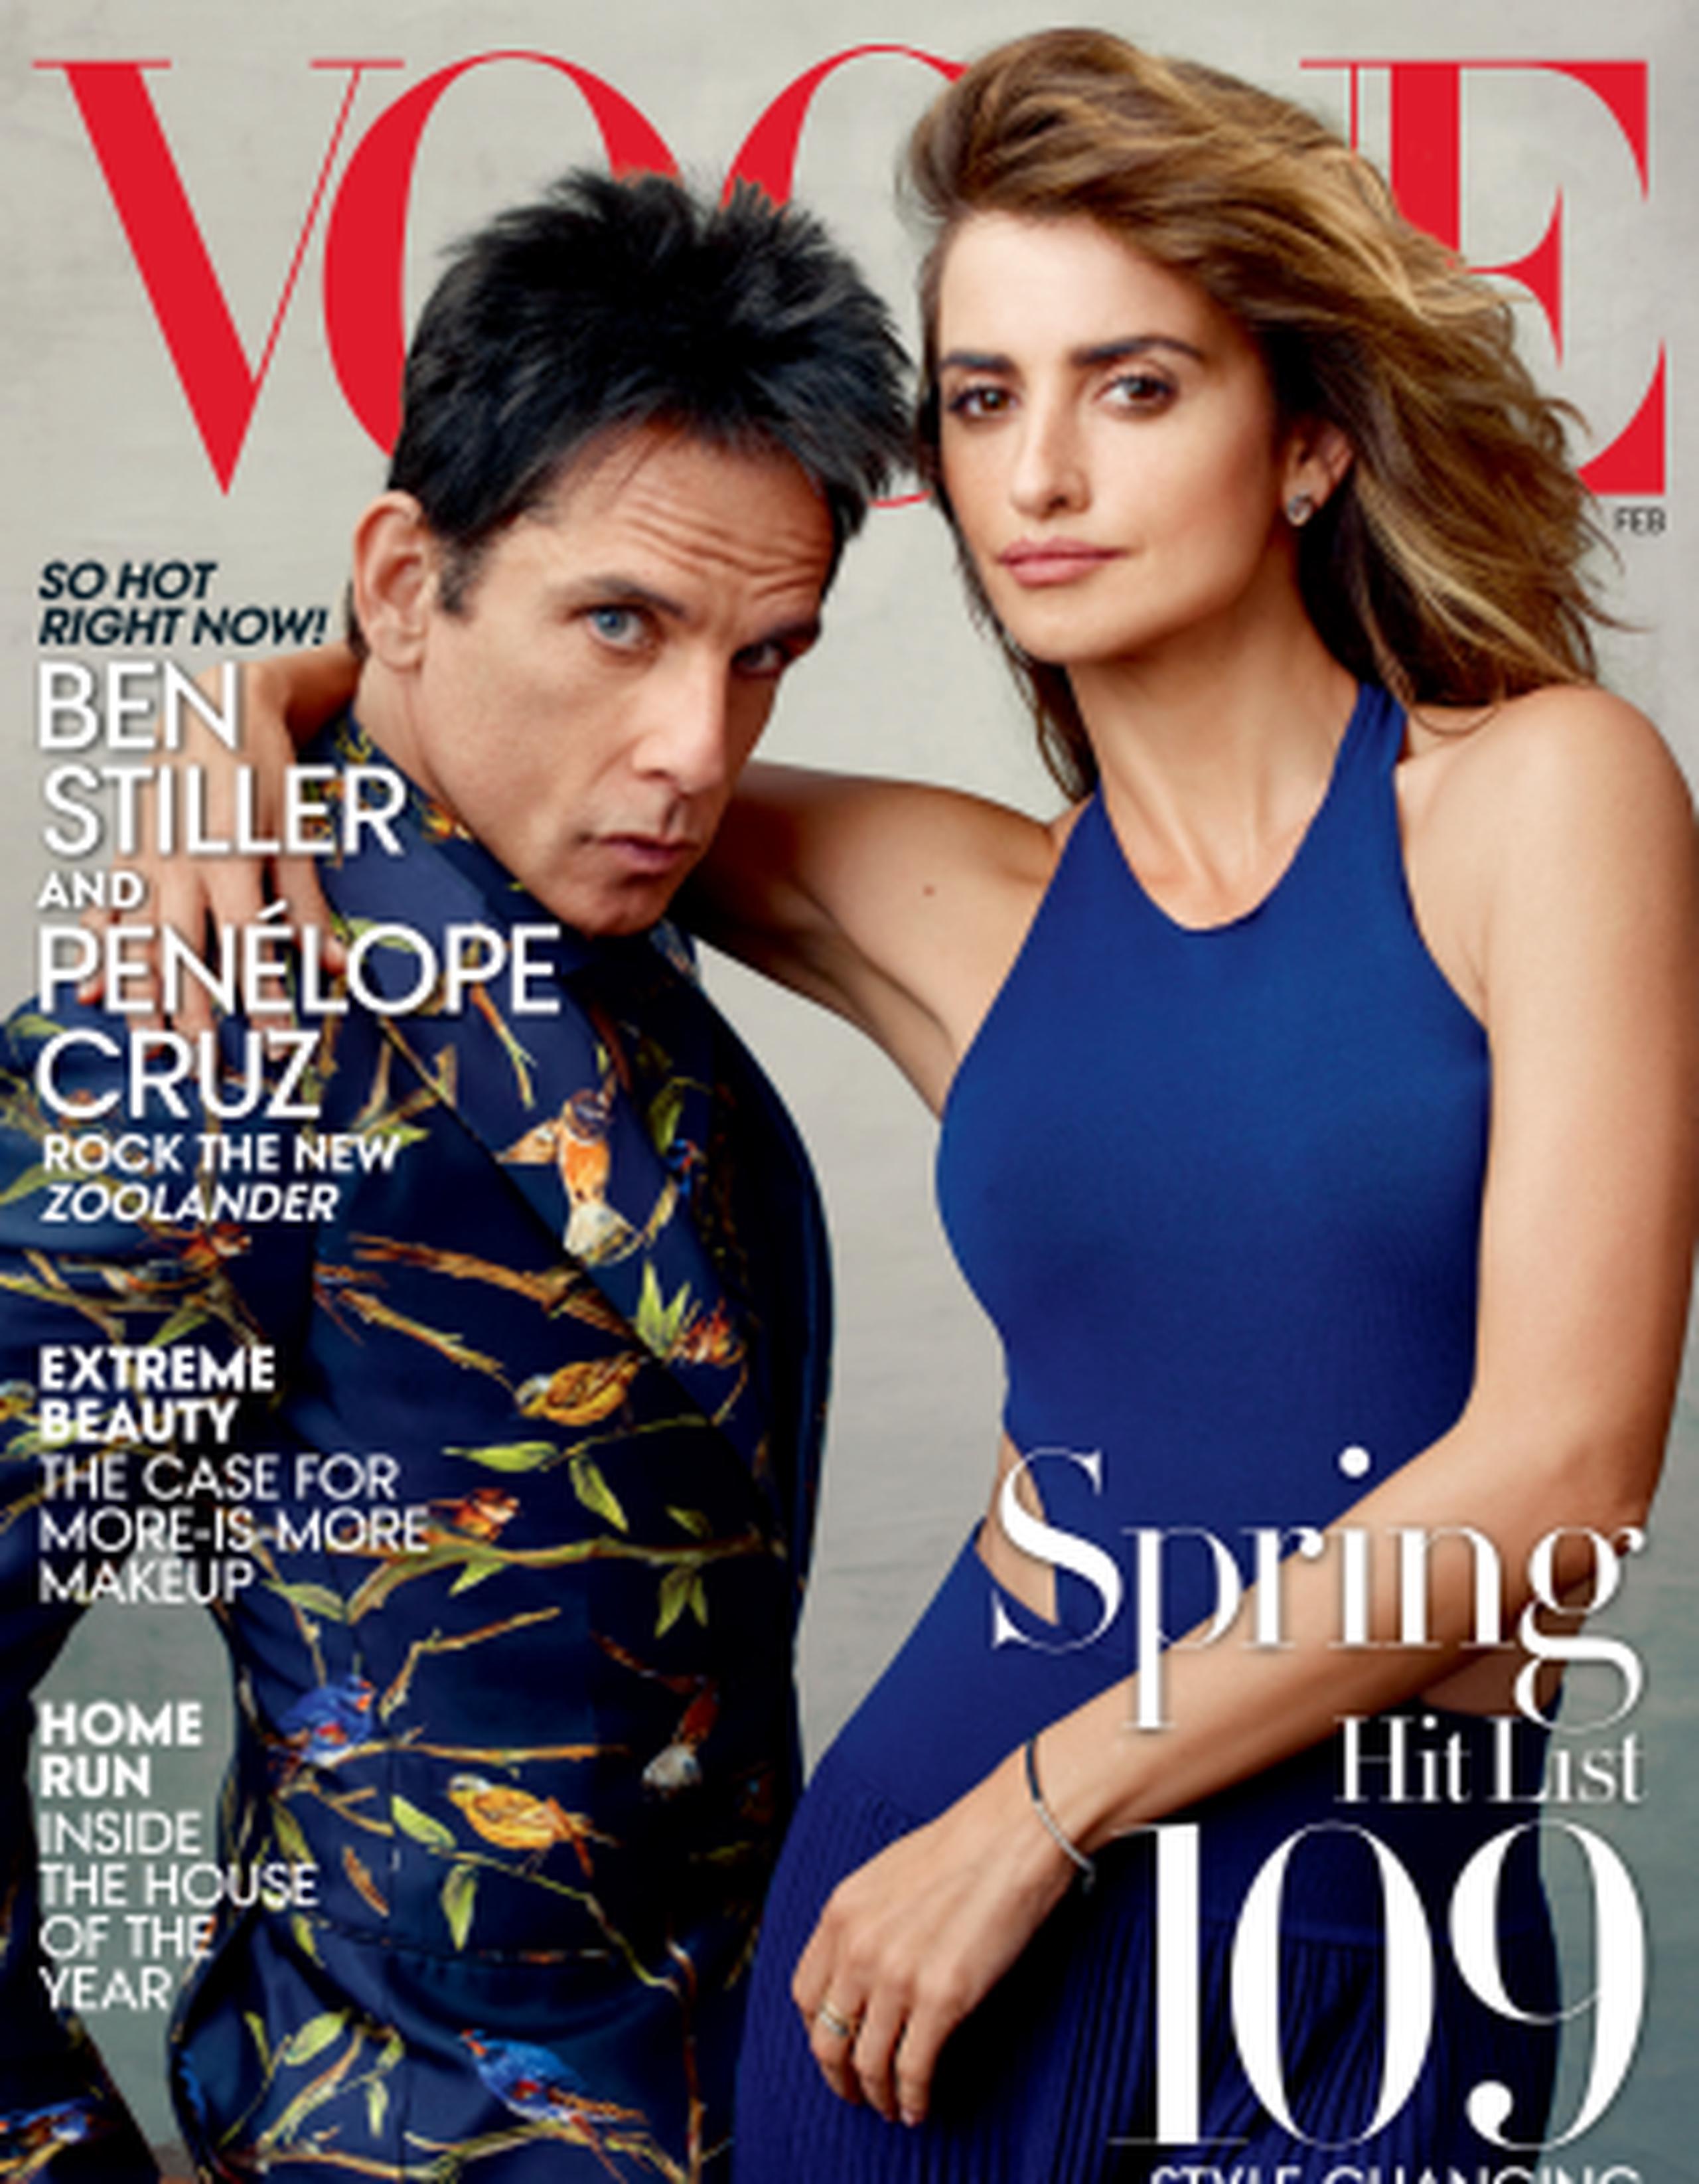 Cruz, ganadora de un oscar en la comedia "Vicky, Cristina, Barcelona", hizo la portada de la revista Vogue por la nueva entrega de Zoolander. (AP)